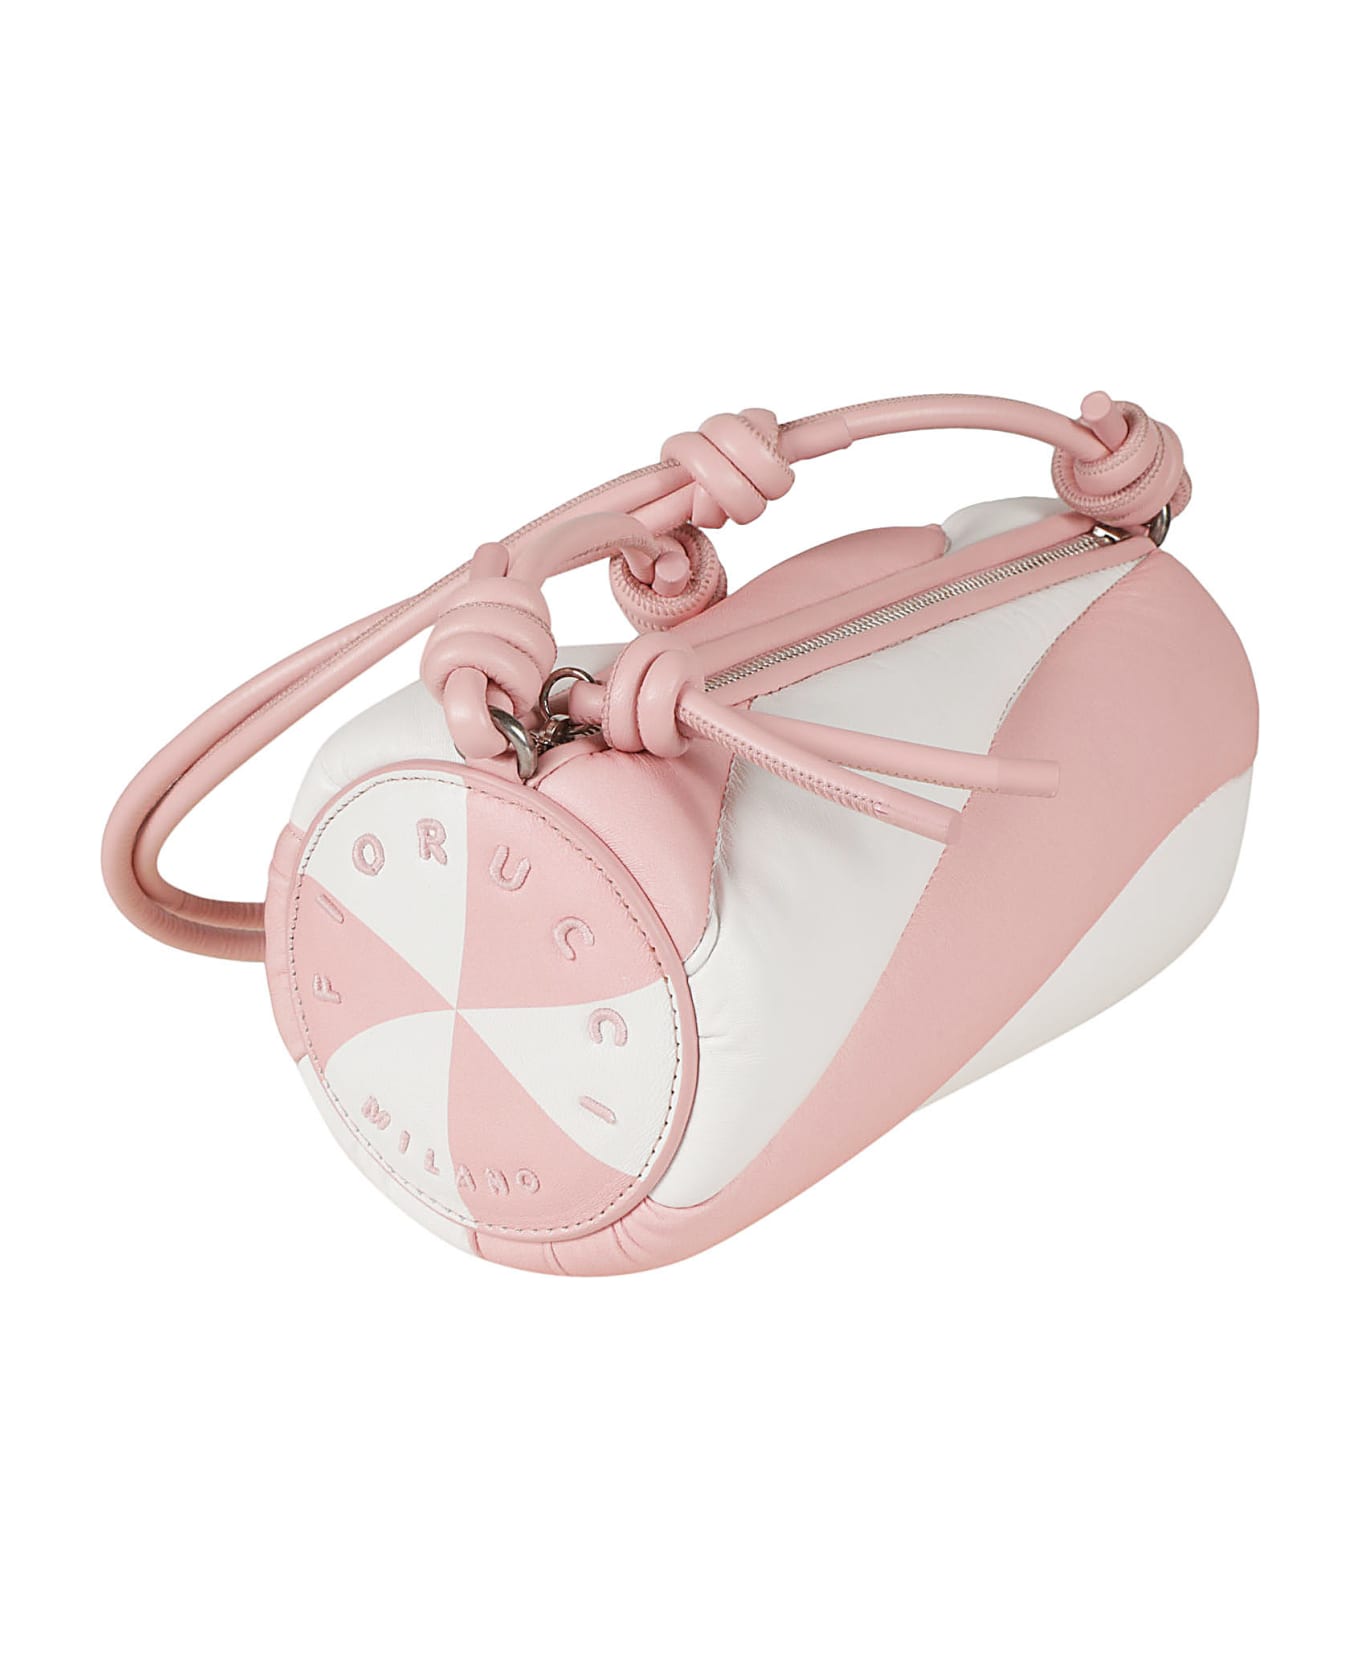 Fiorucci Mella Shoulder Bag - Pink